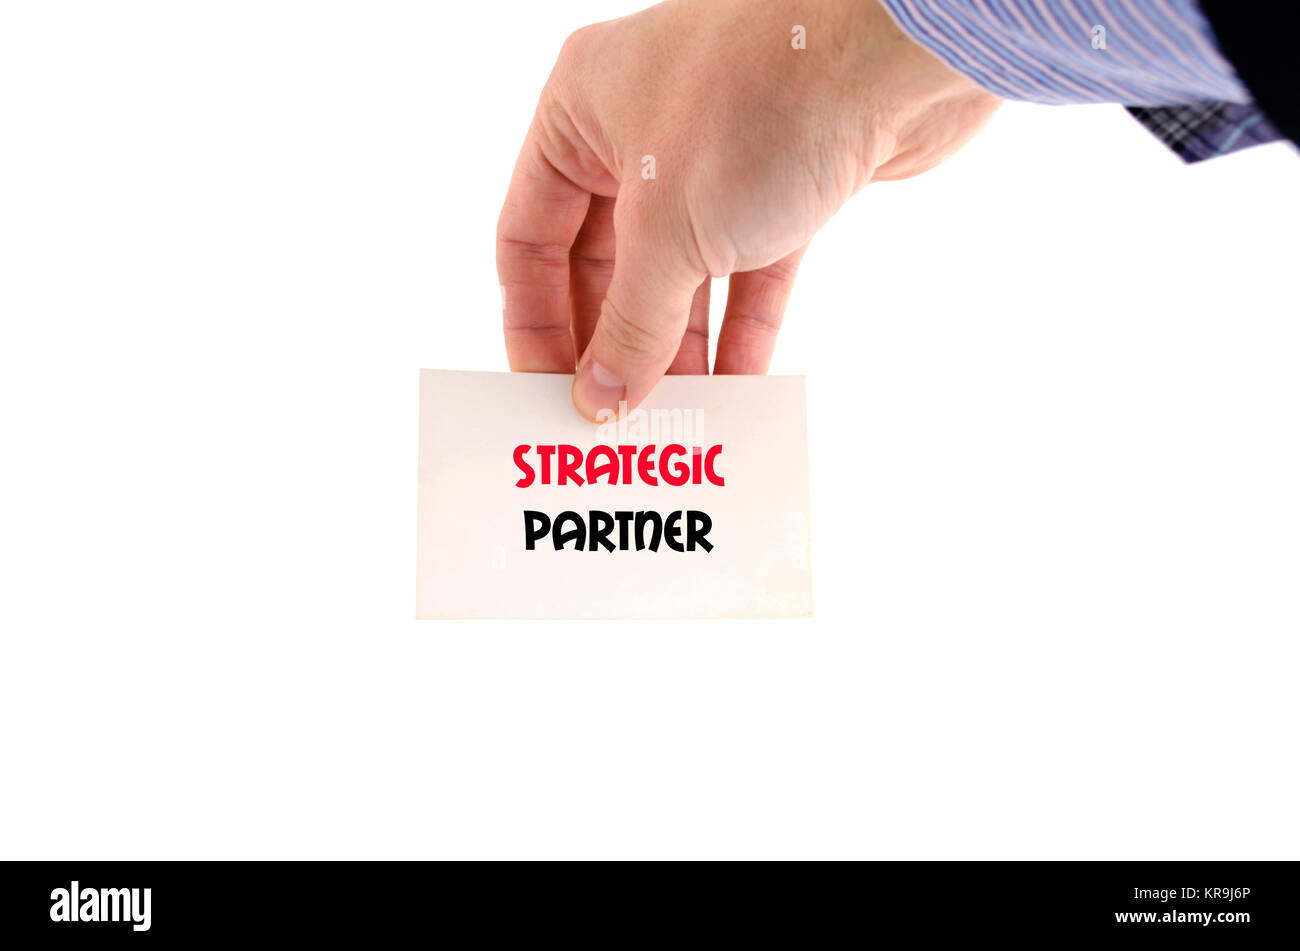 Partenaire stratégique concept texte Banque D'Images